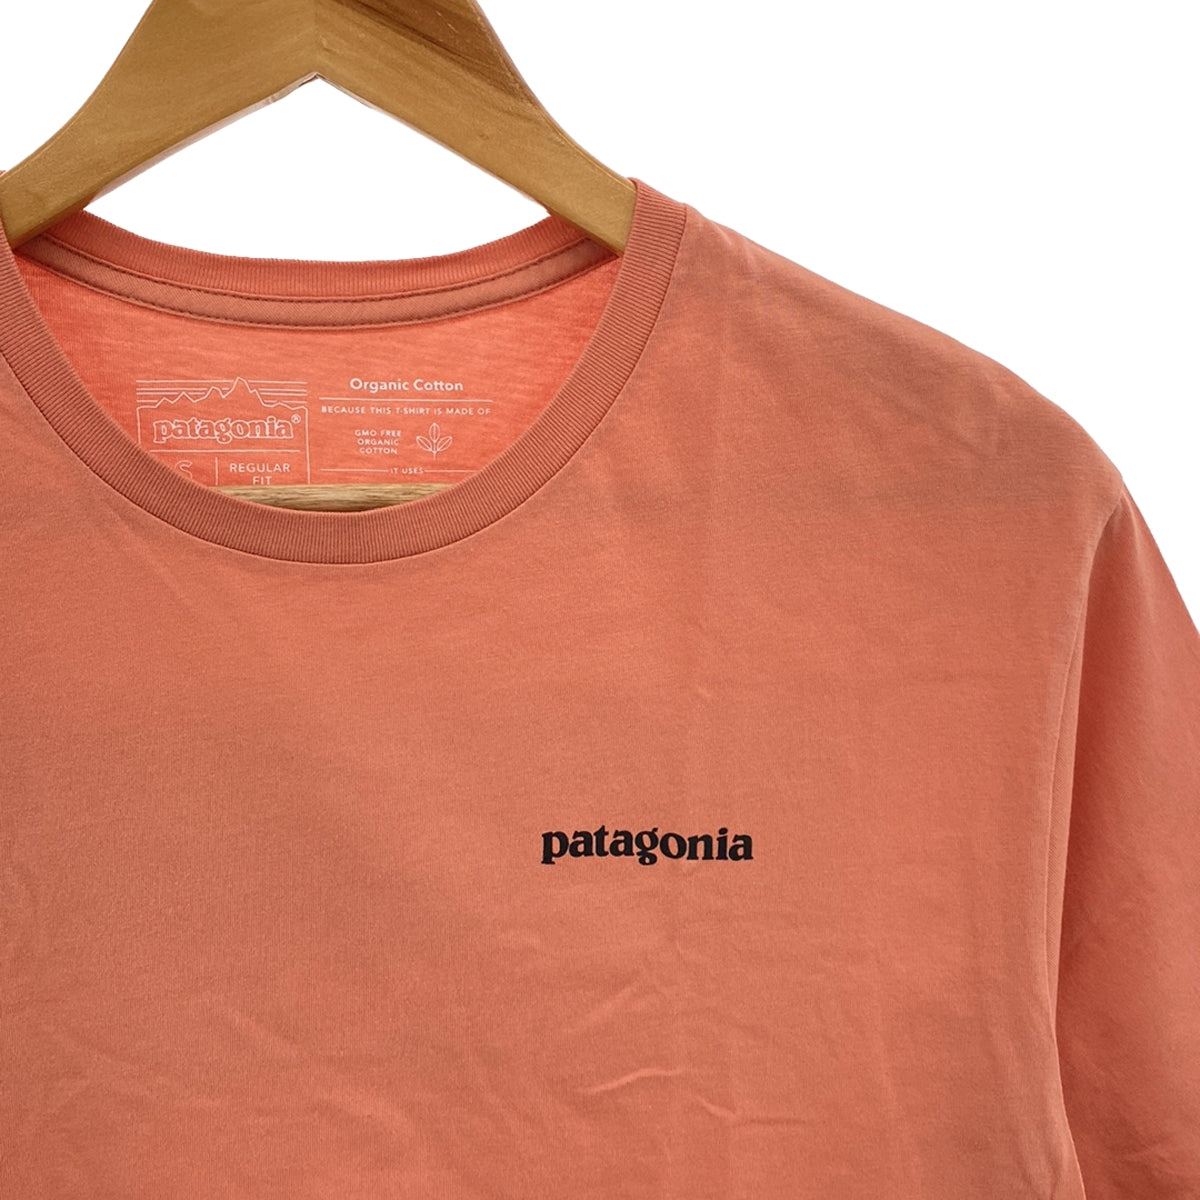 Patagonia / パタゴニア | P-6ロゴ プリント オーガニックコットン Tシャツ | S | メンズ